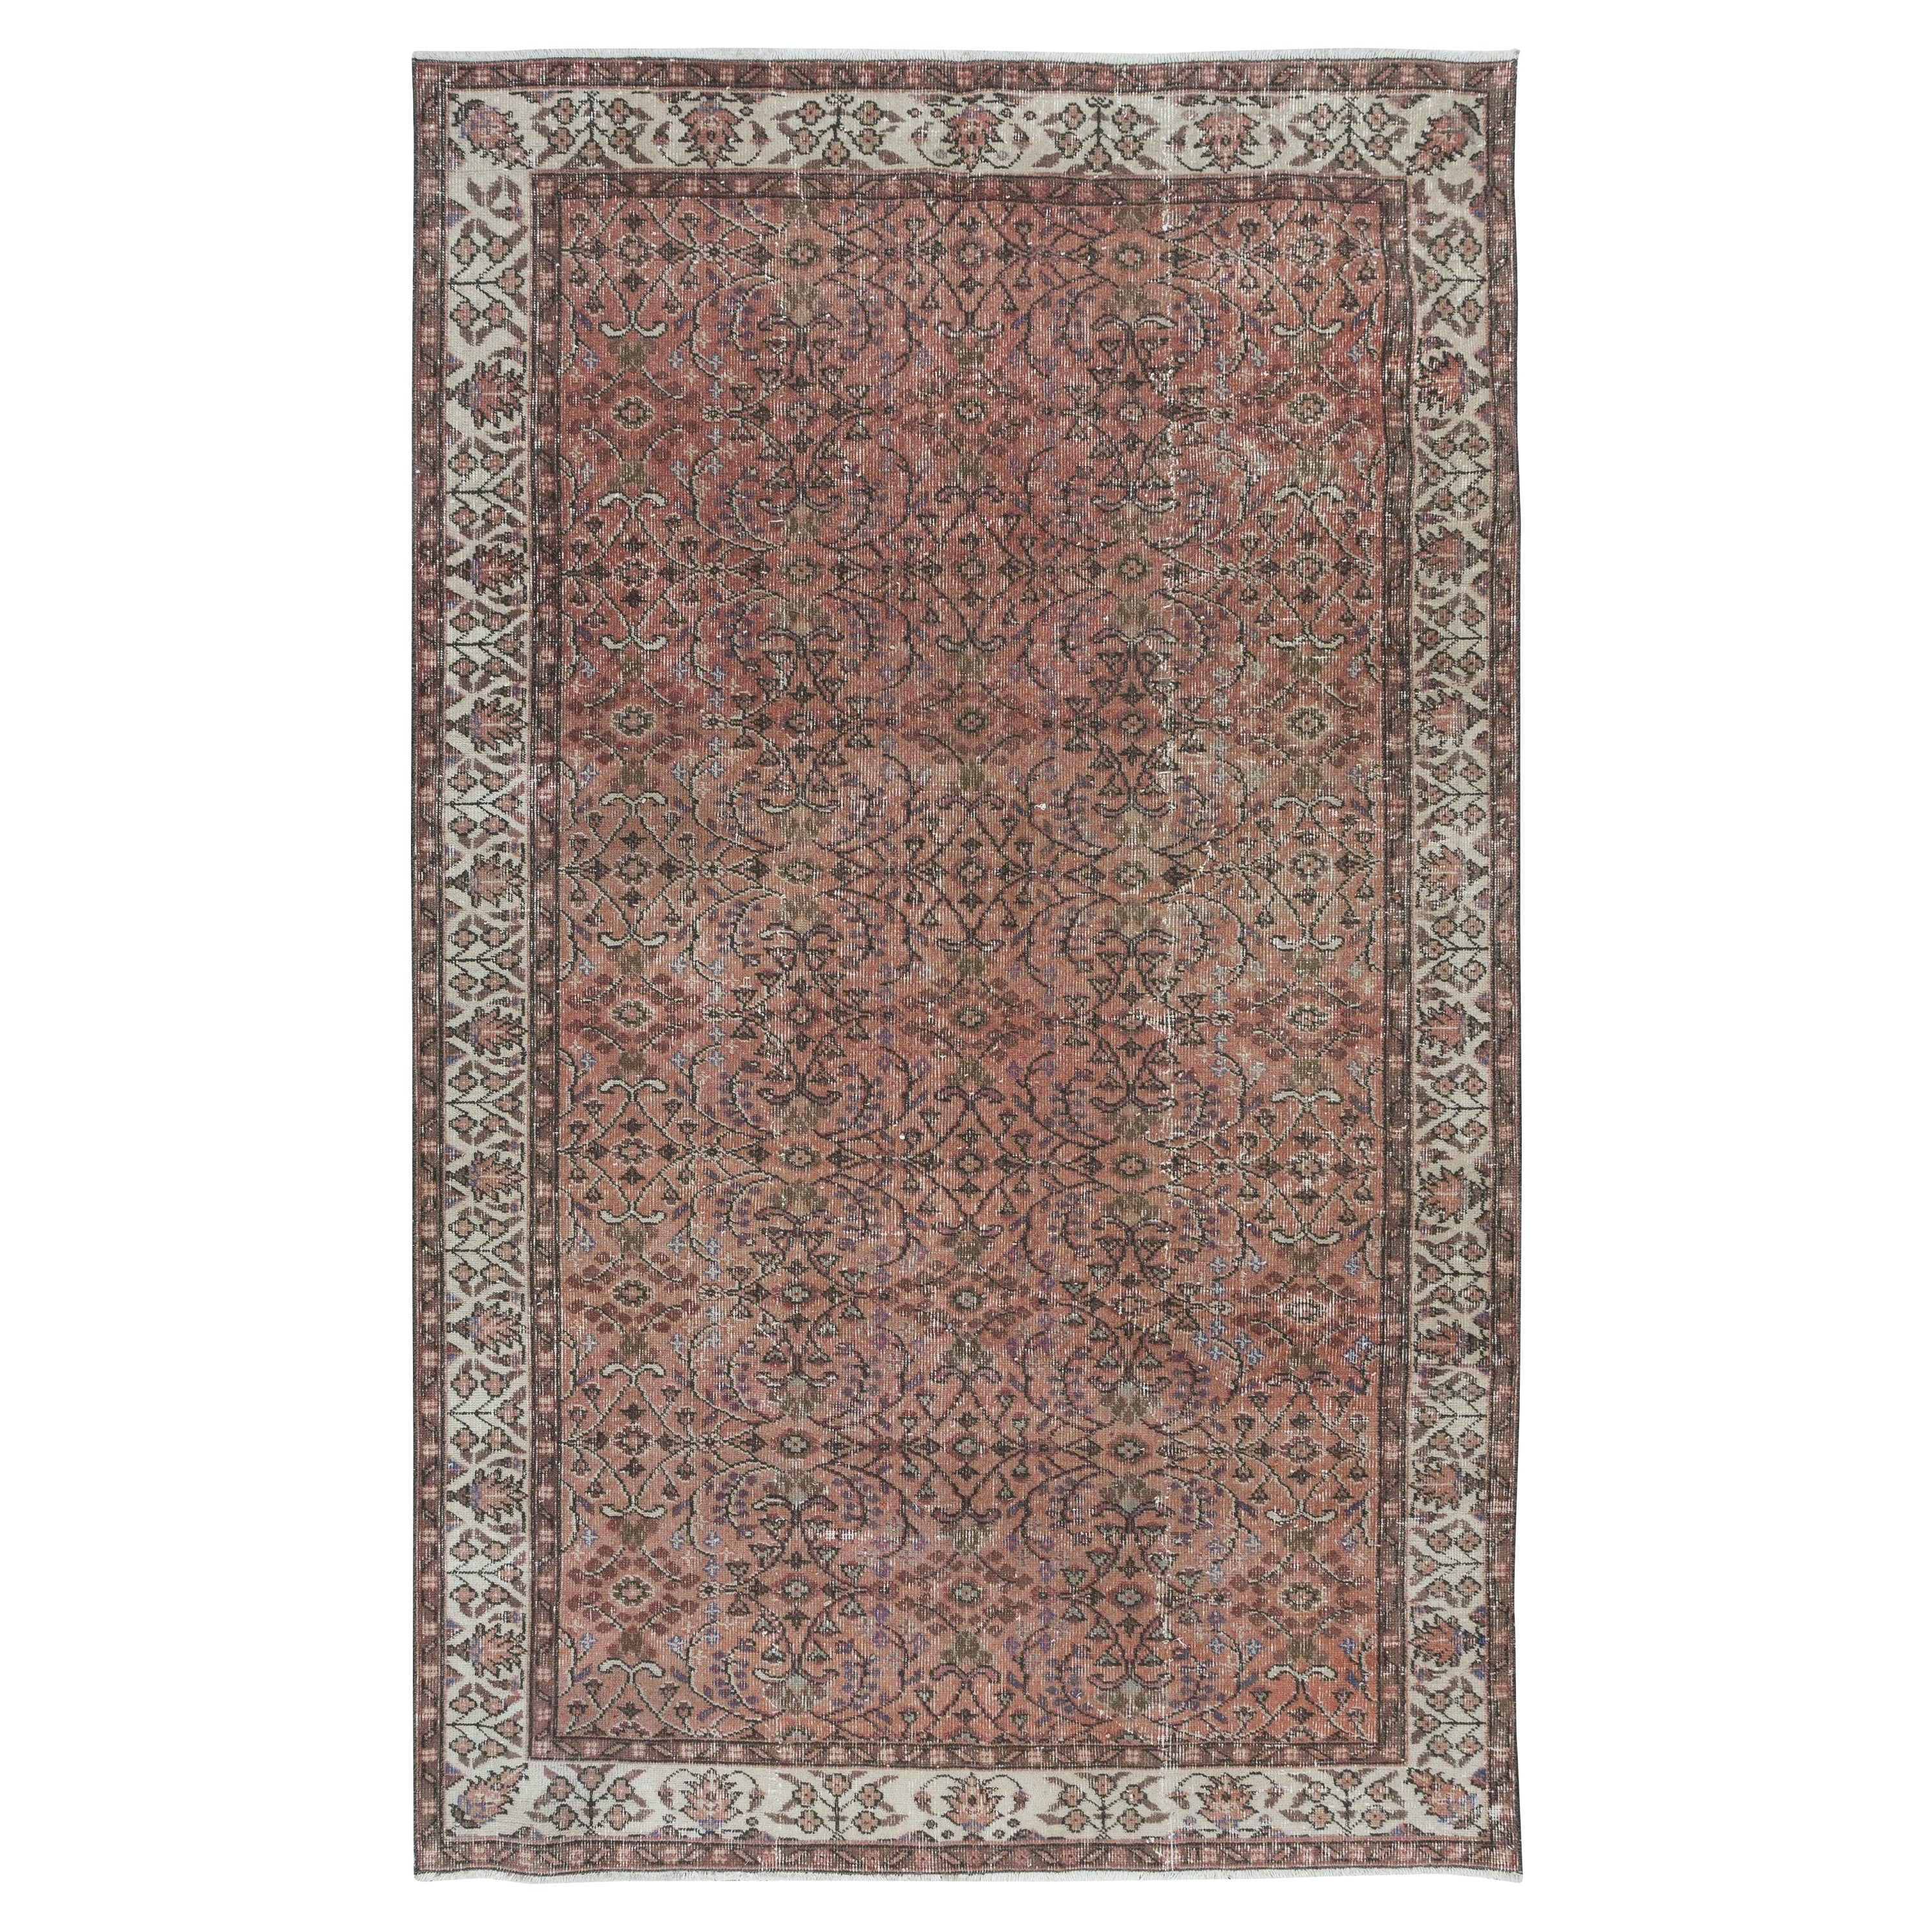 Türkischer 5,4x8.8 Ft Vintage-Teppich in Rot & Beige, handgeknüpfter, geblümter Teppich